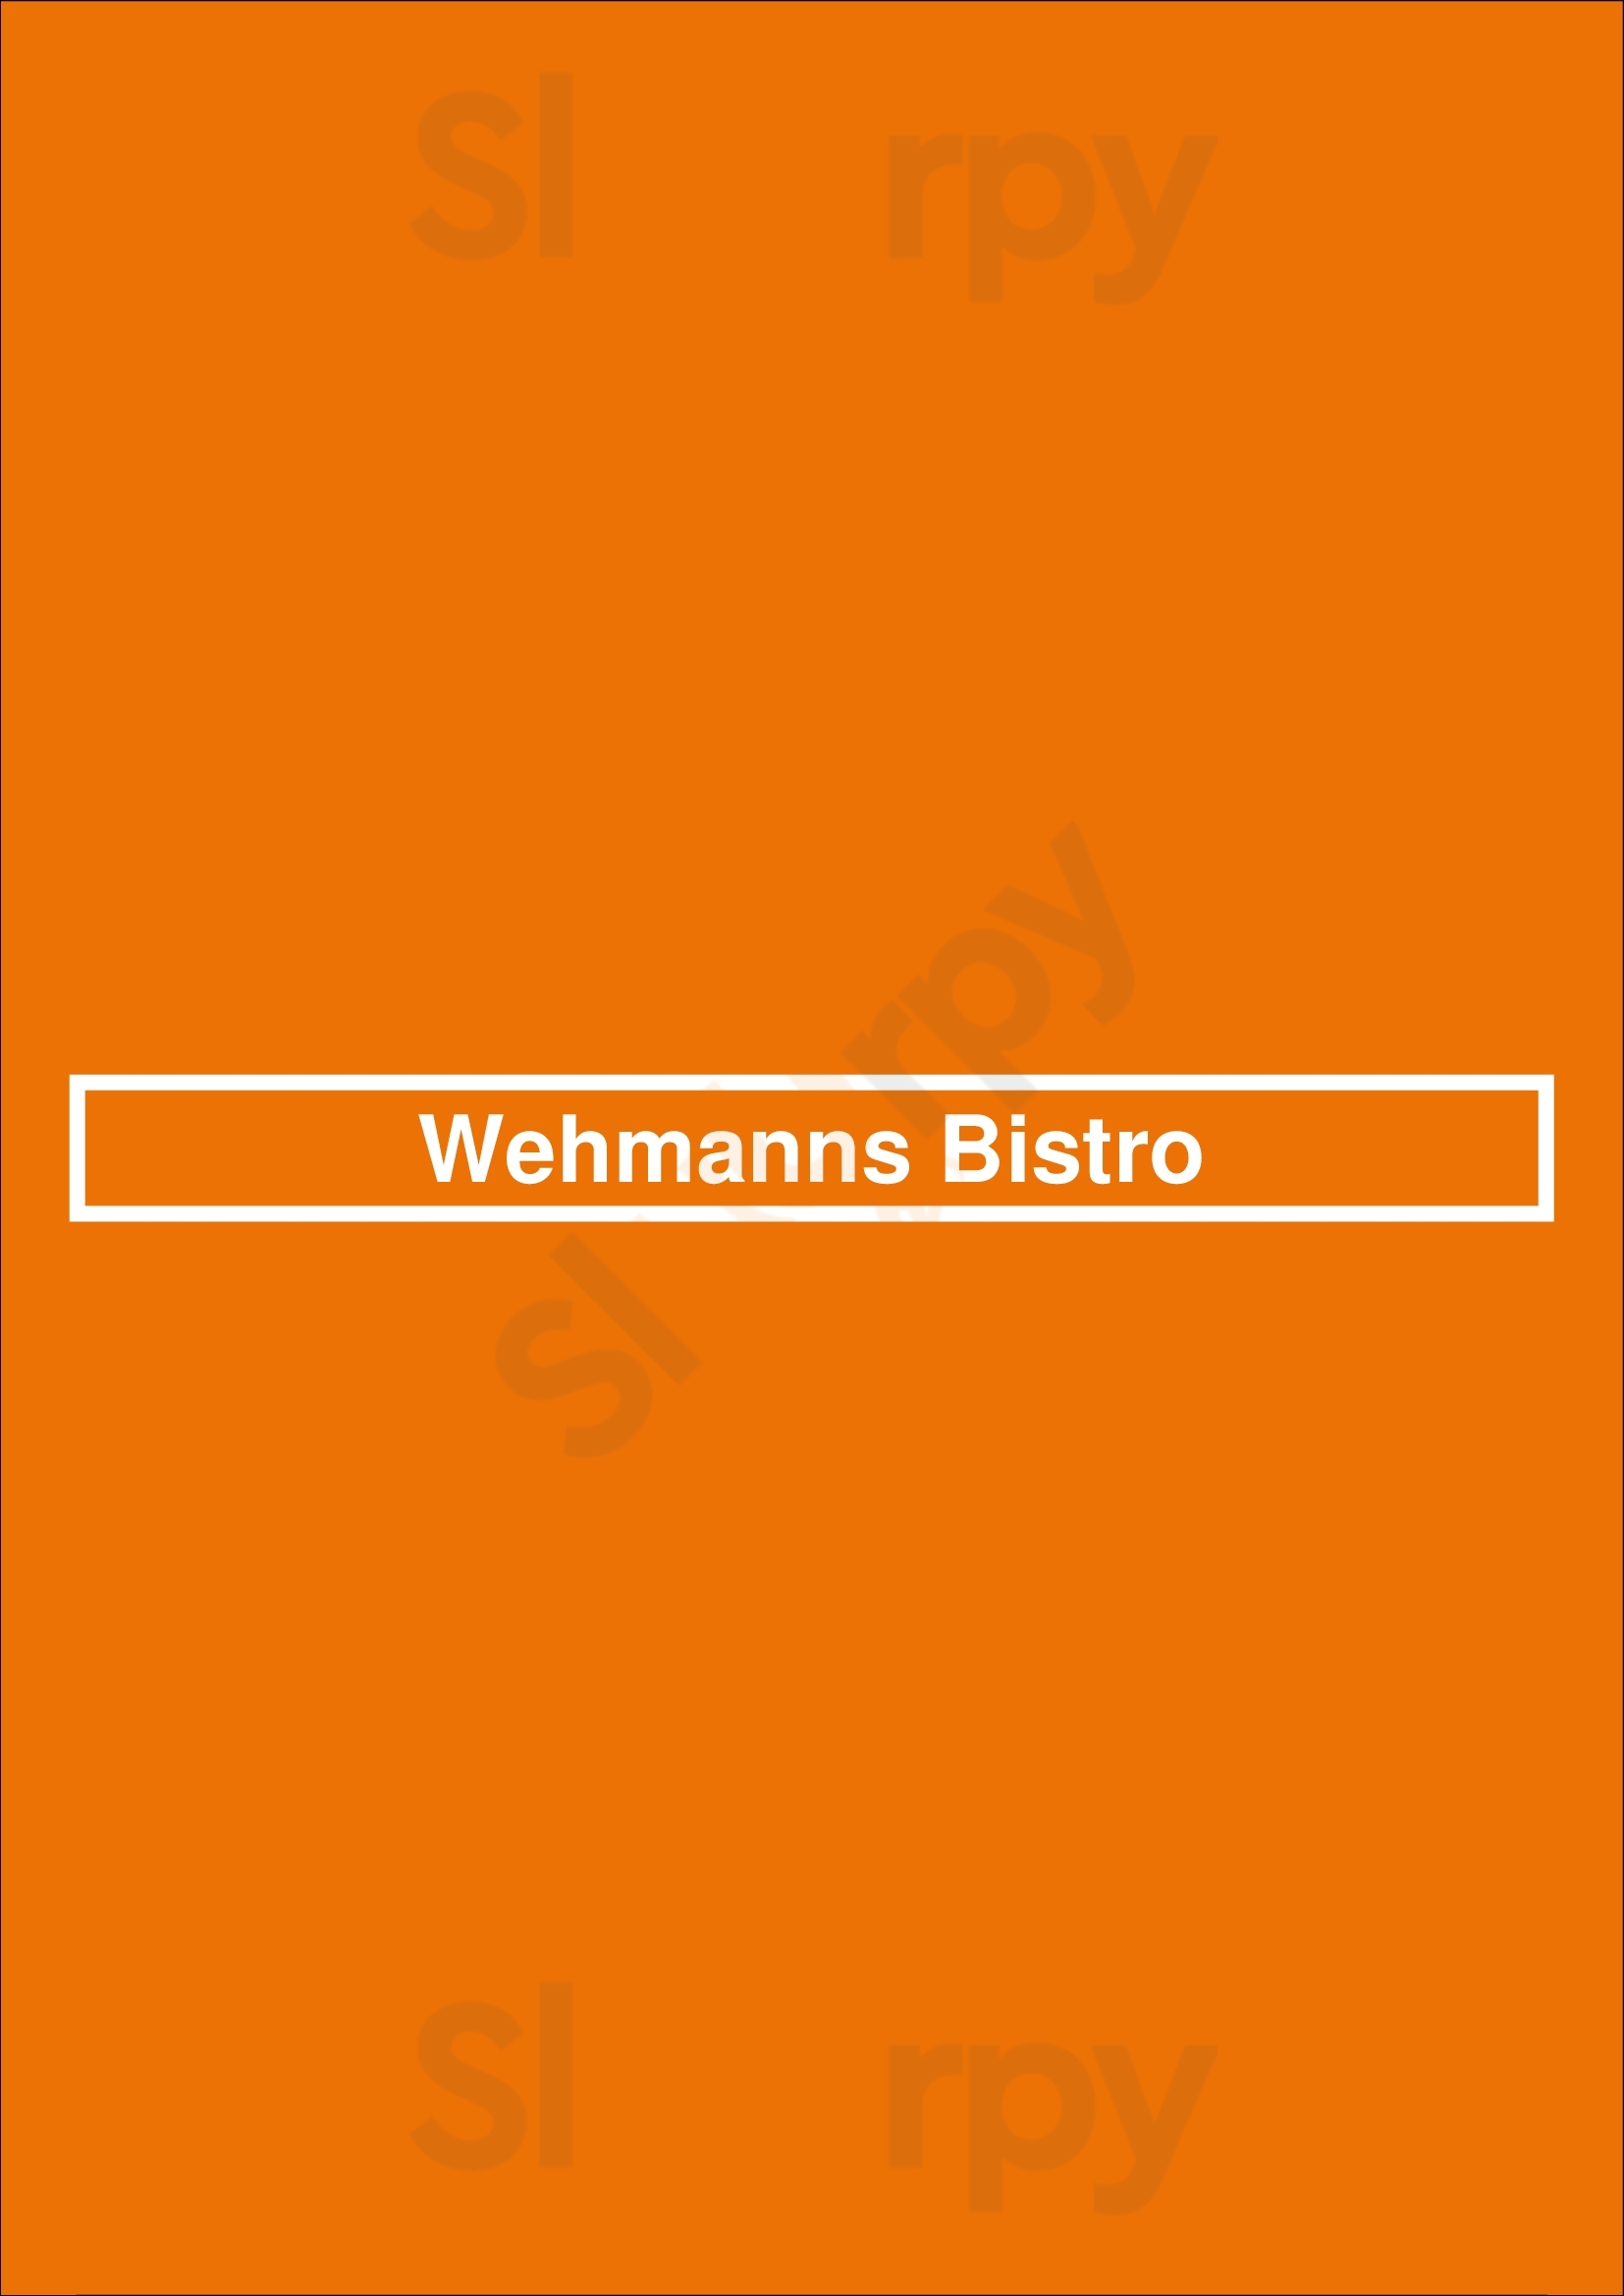 Wehmanns Bistro Hamburg Menu - 1